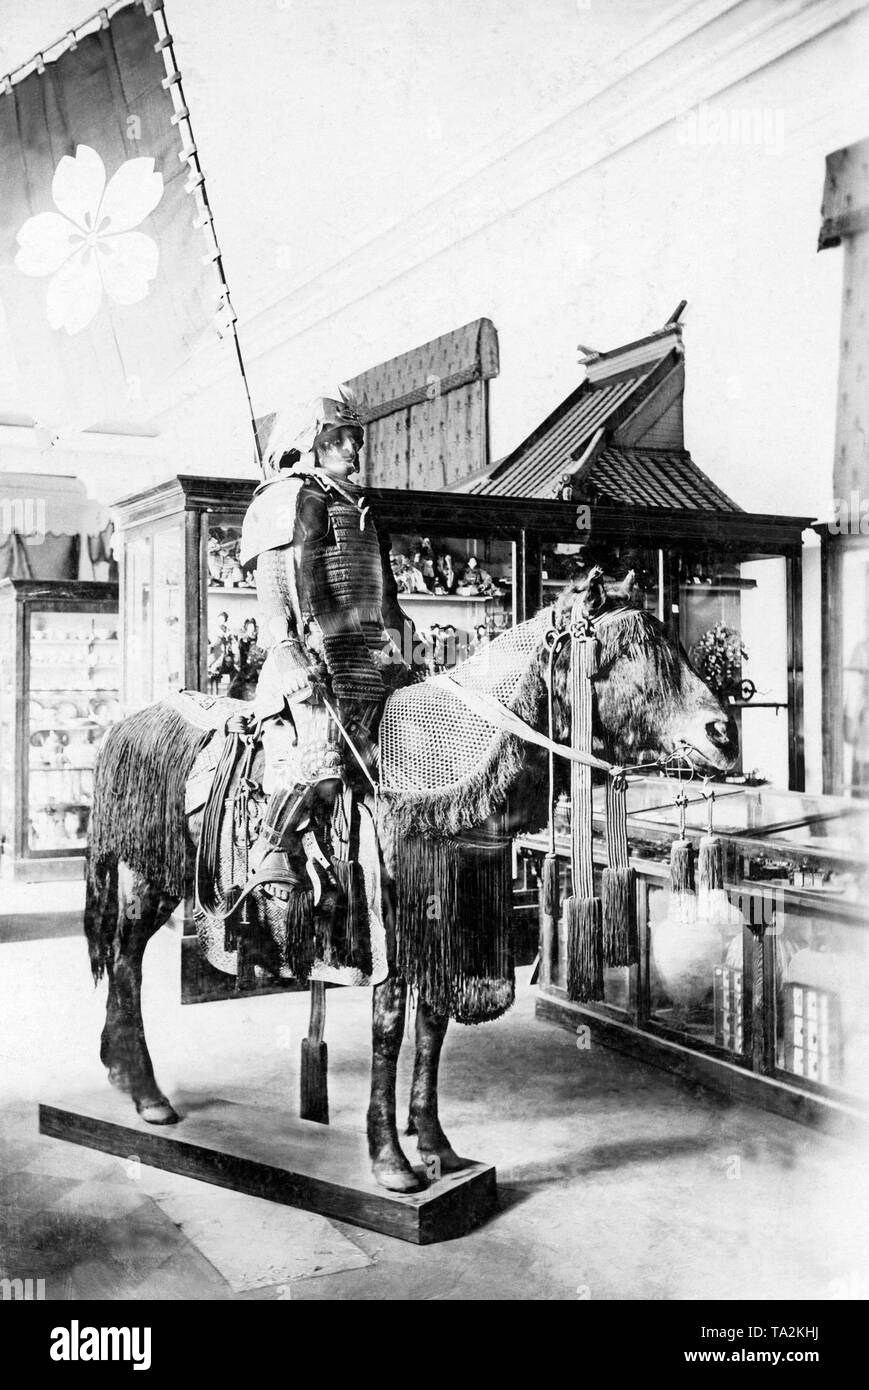 Ein Museum, eine japanische Krieger zu Pferd im Kabinett der Kuriositäten des Ethnographischen Museums in St. Petersburg. Stockfoto